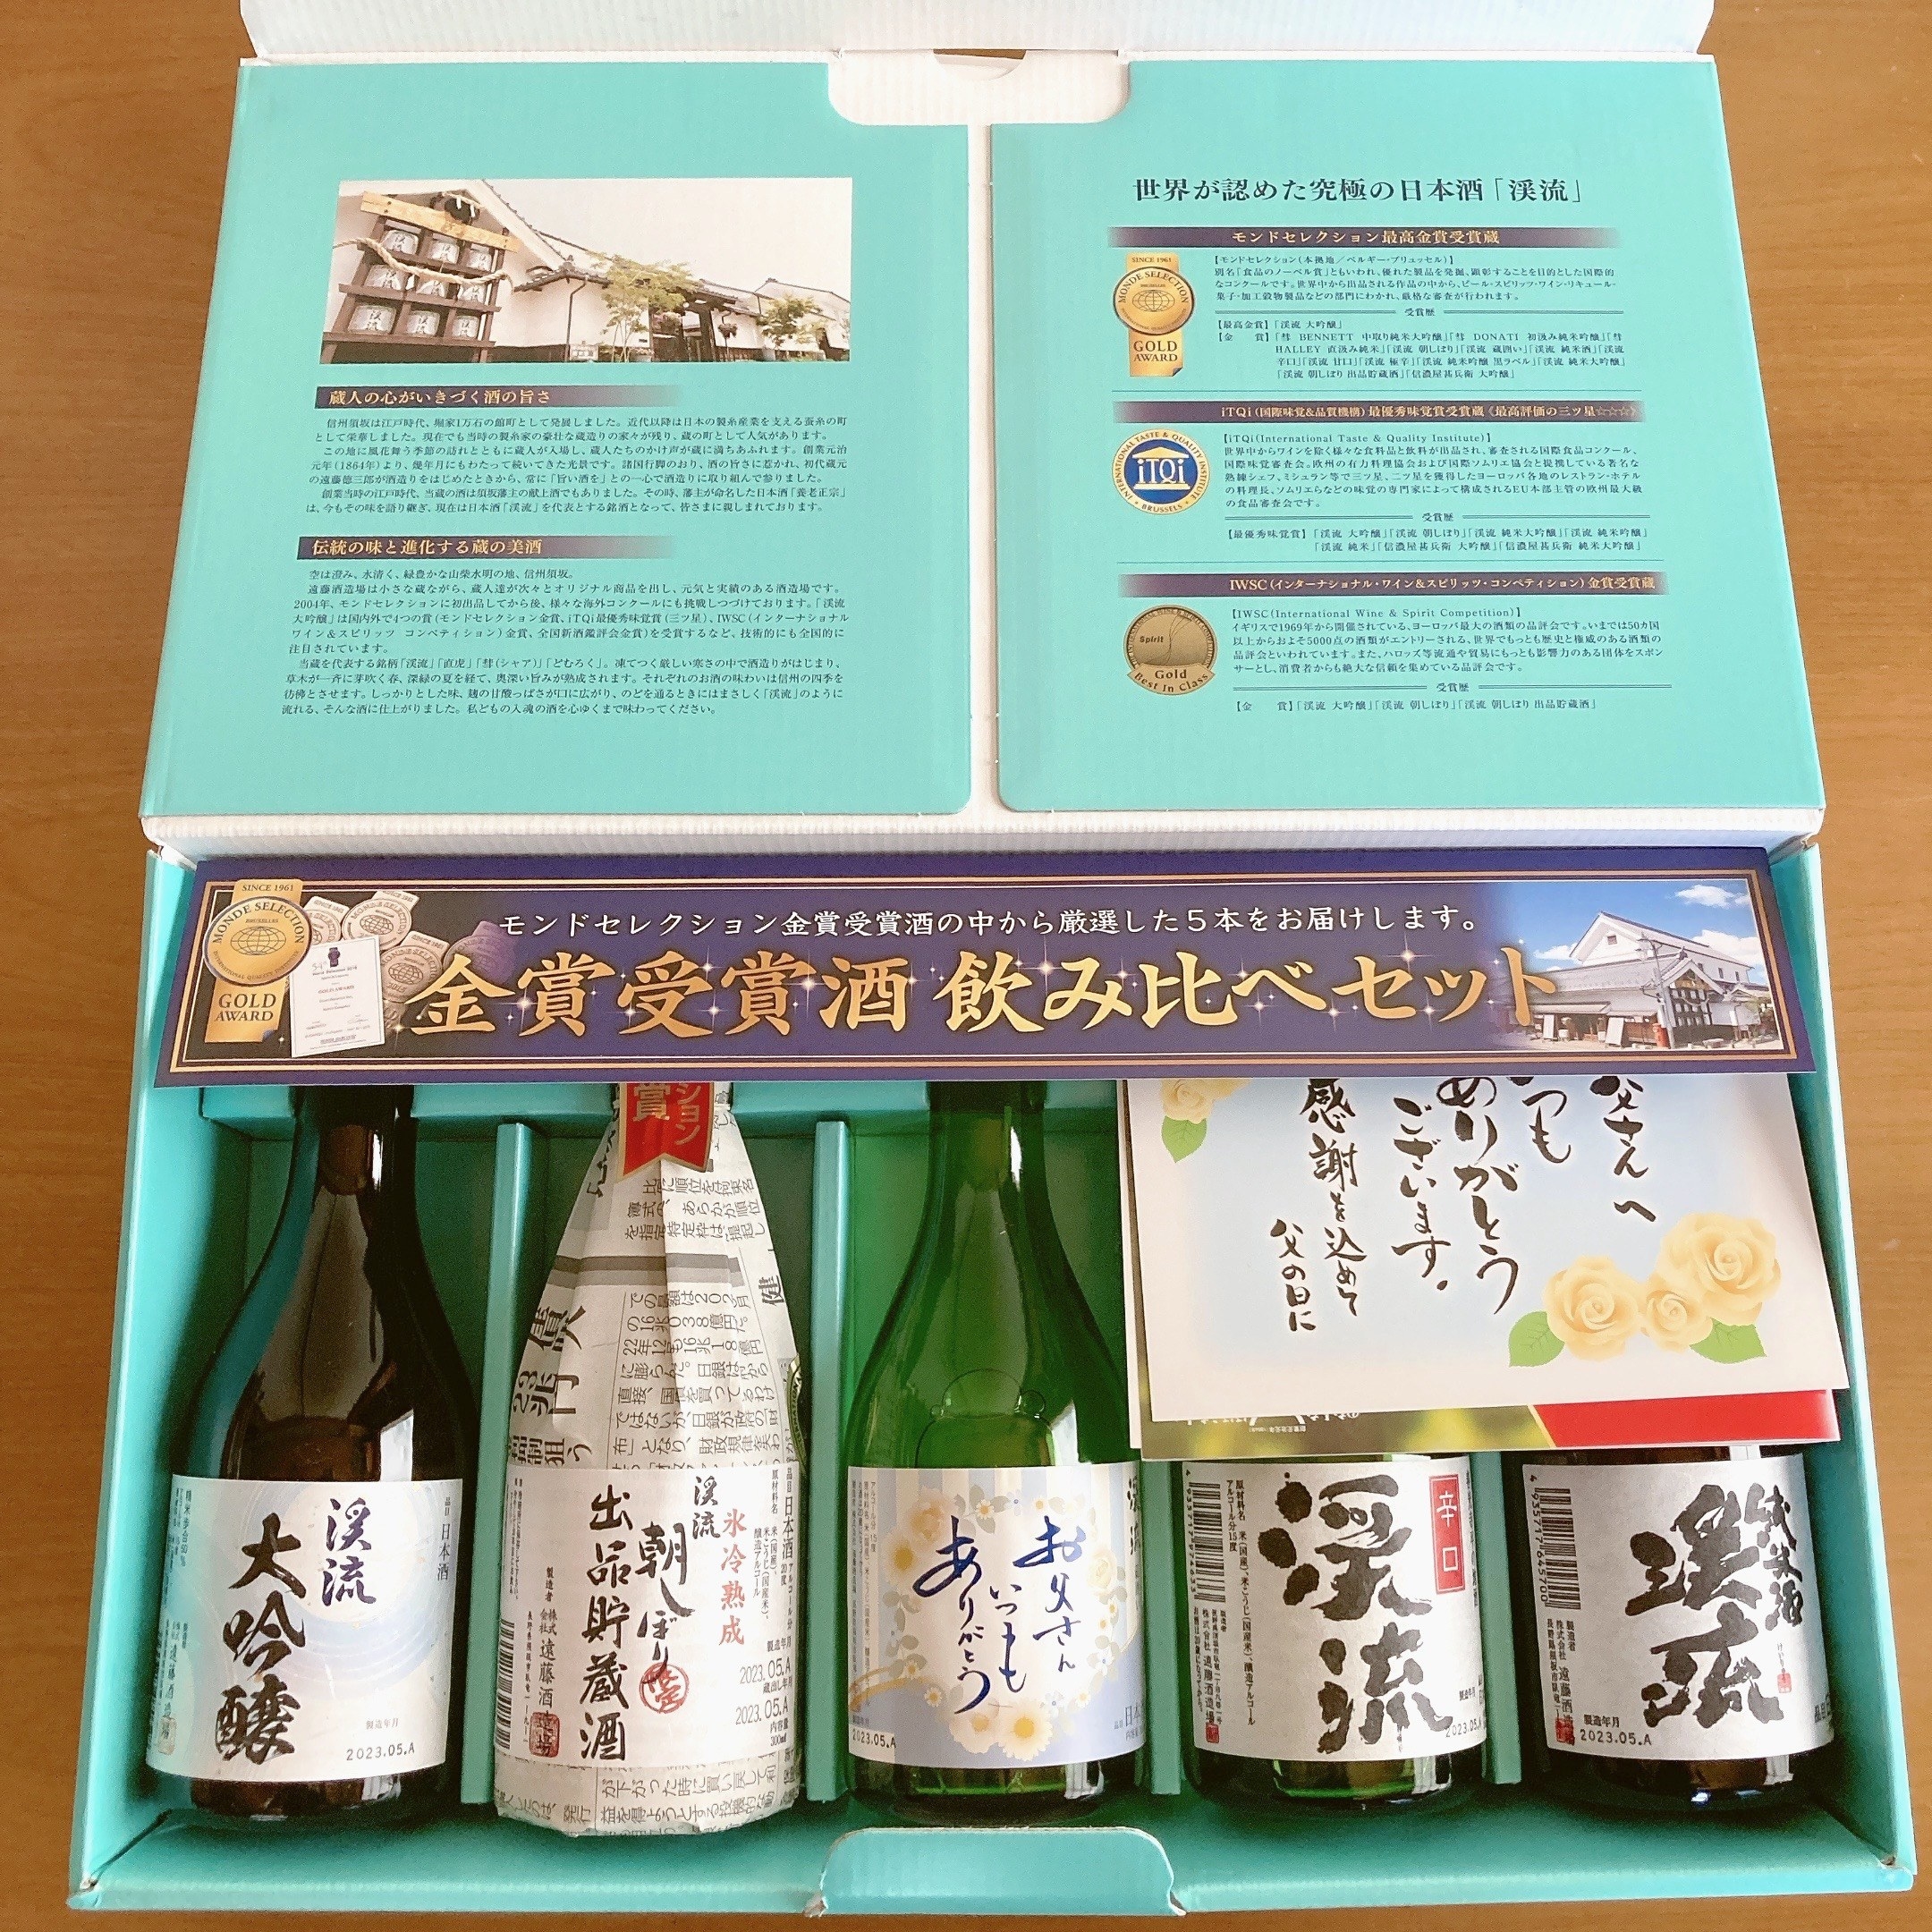 モンドセレクション金賞受賞の日本酒5本セットがAmazonで3000円台です